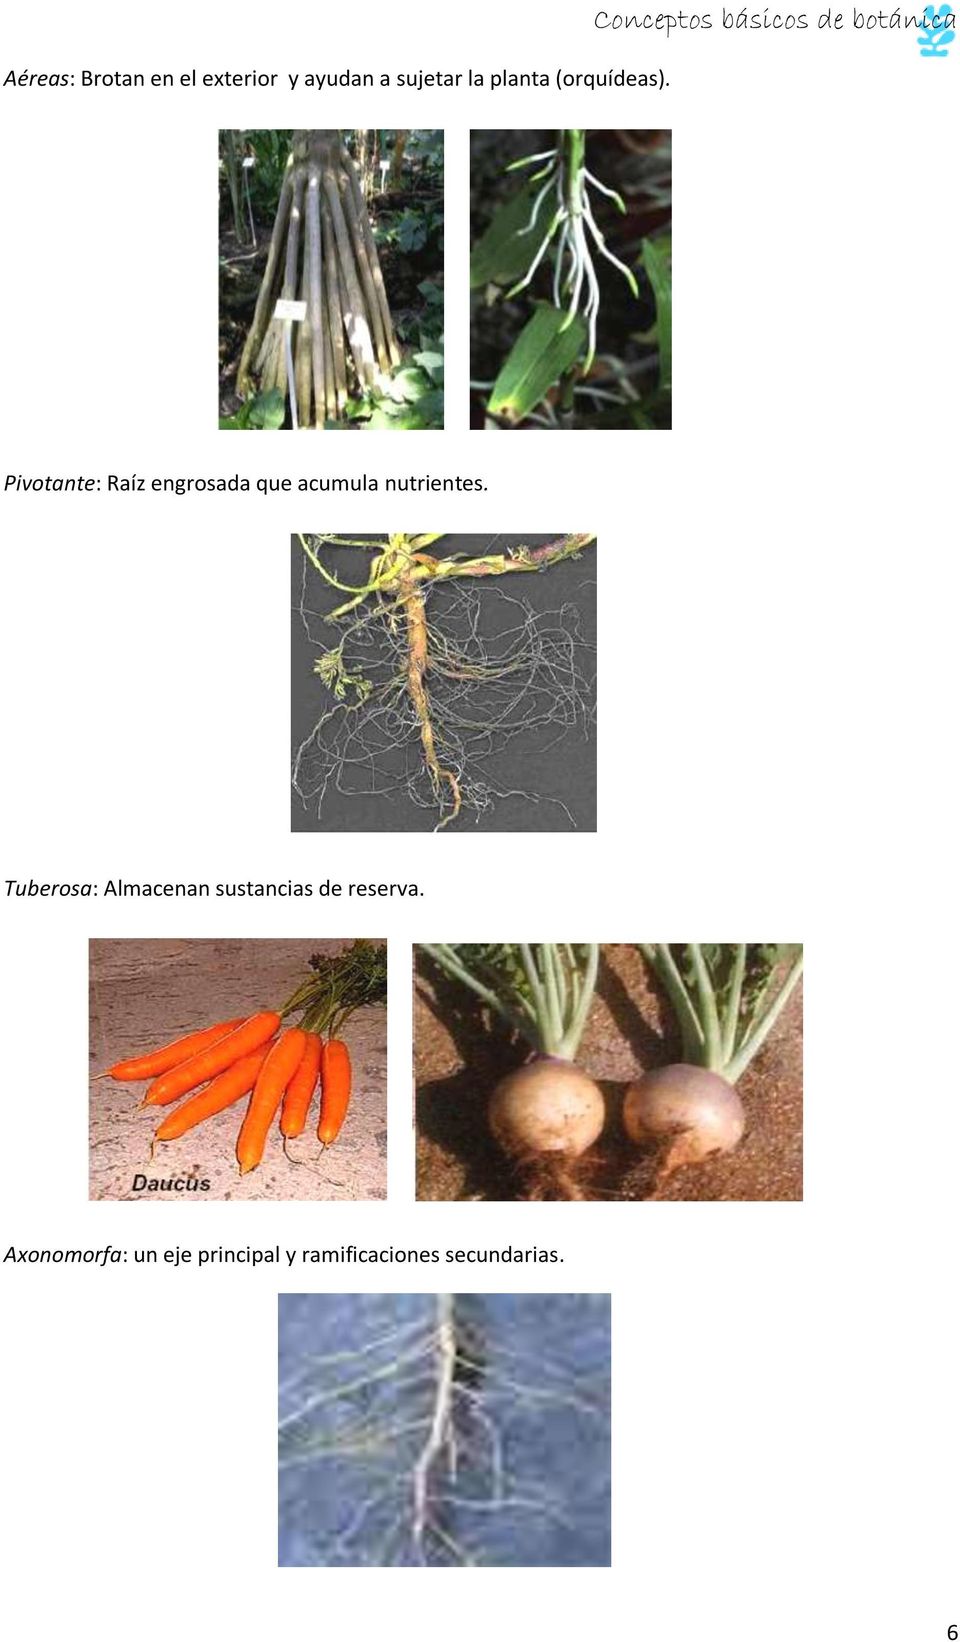 Conceptos básicos de botánica Pivotante: Raíz engrosada que